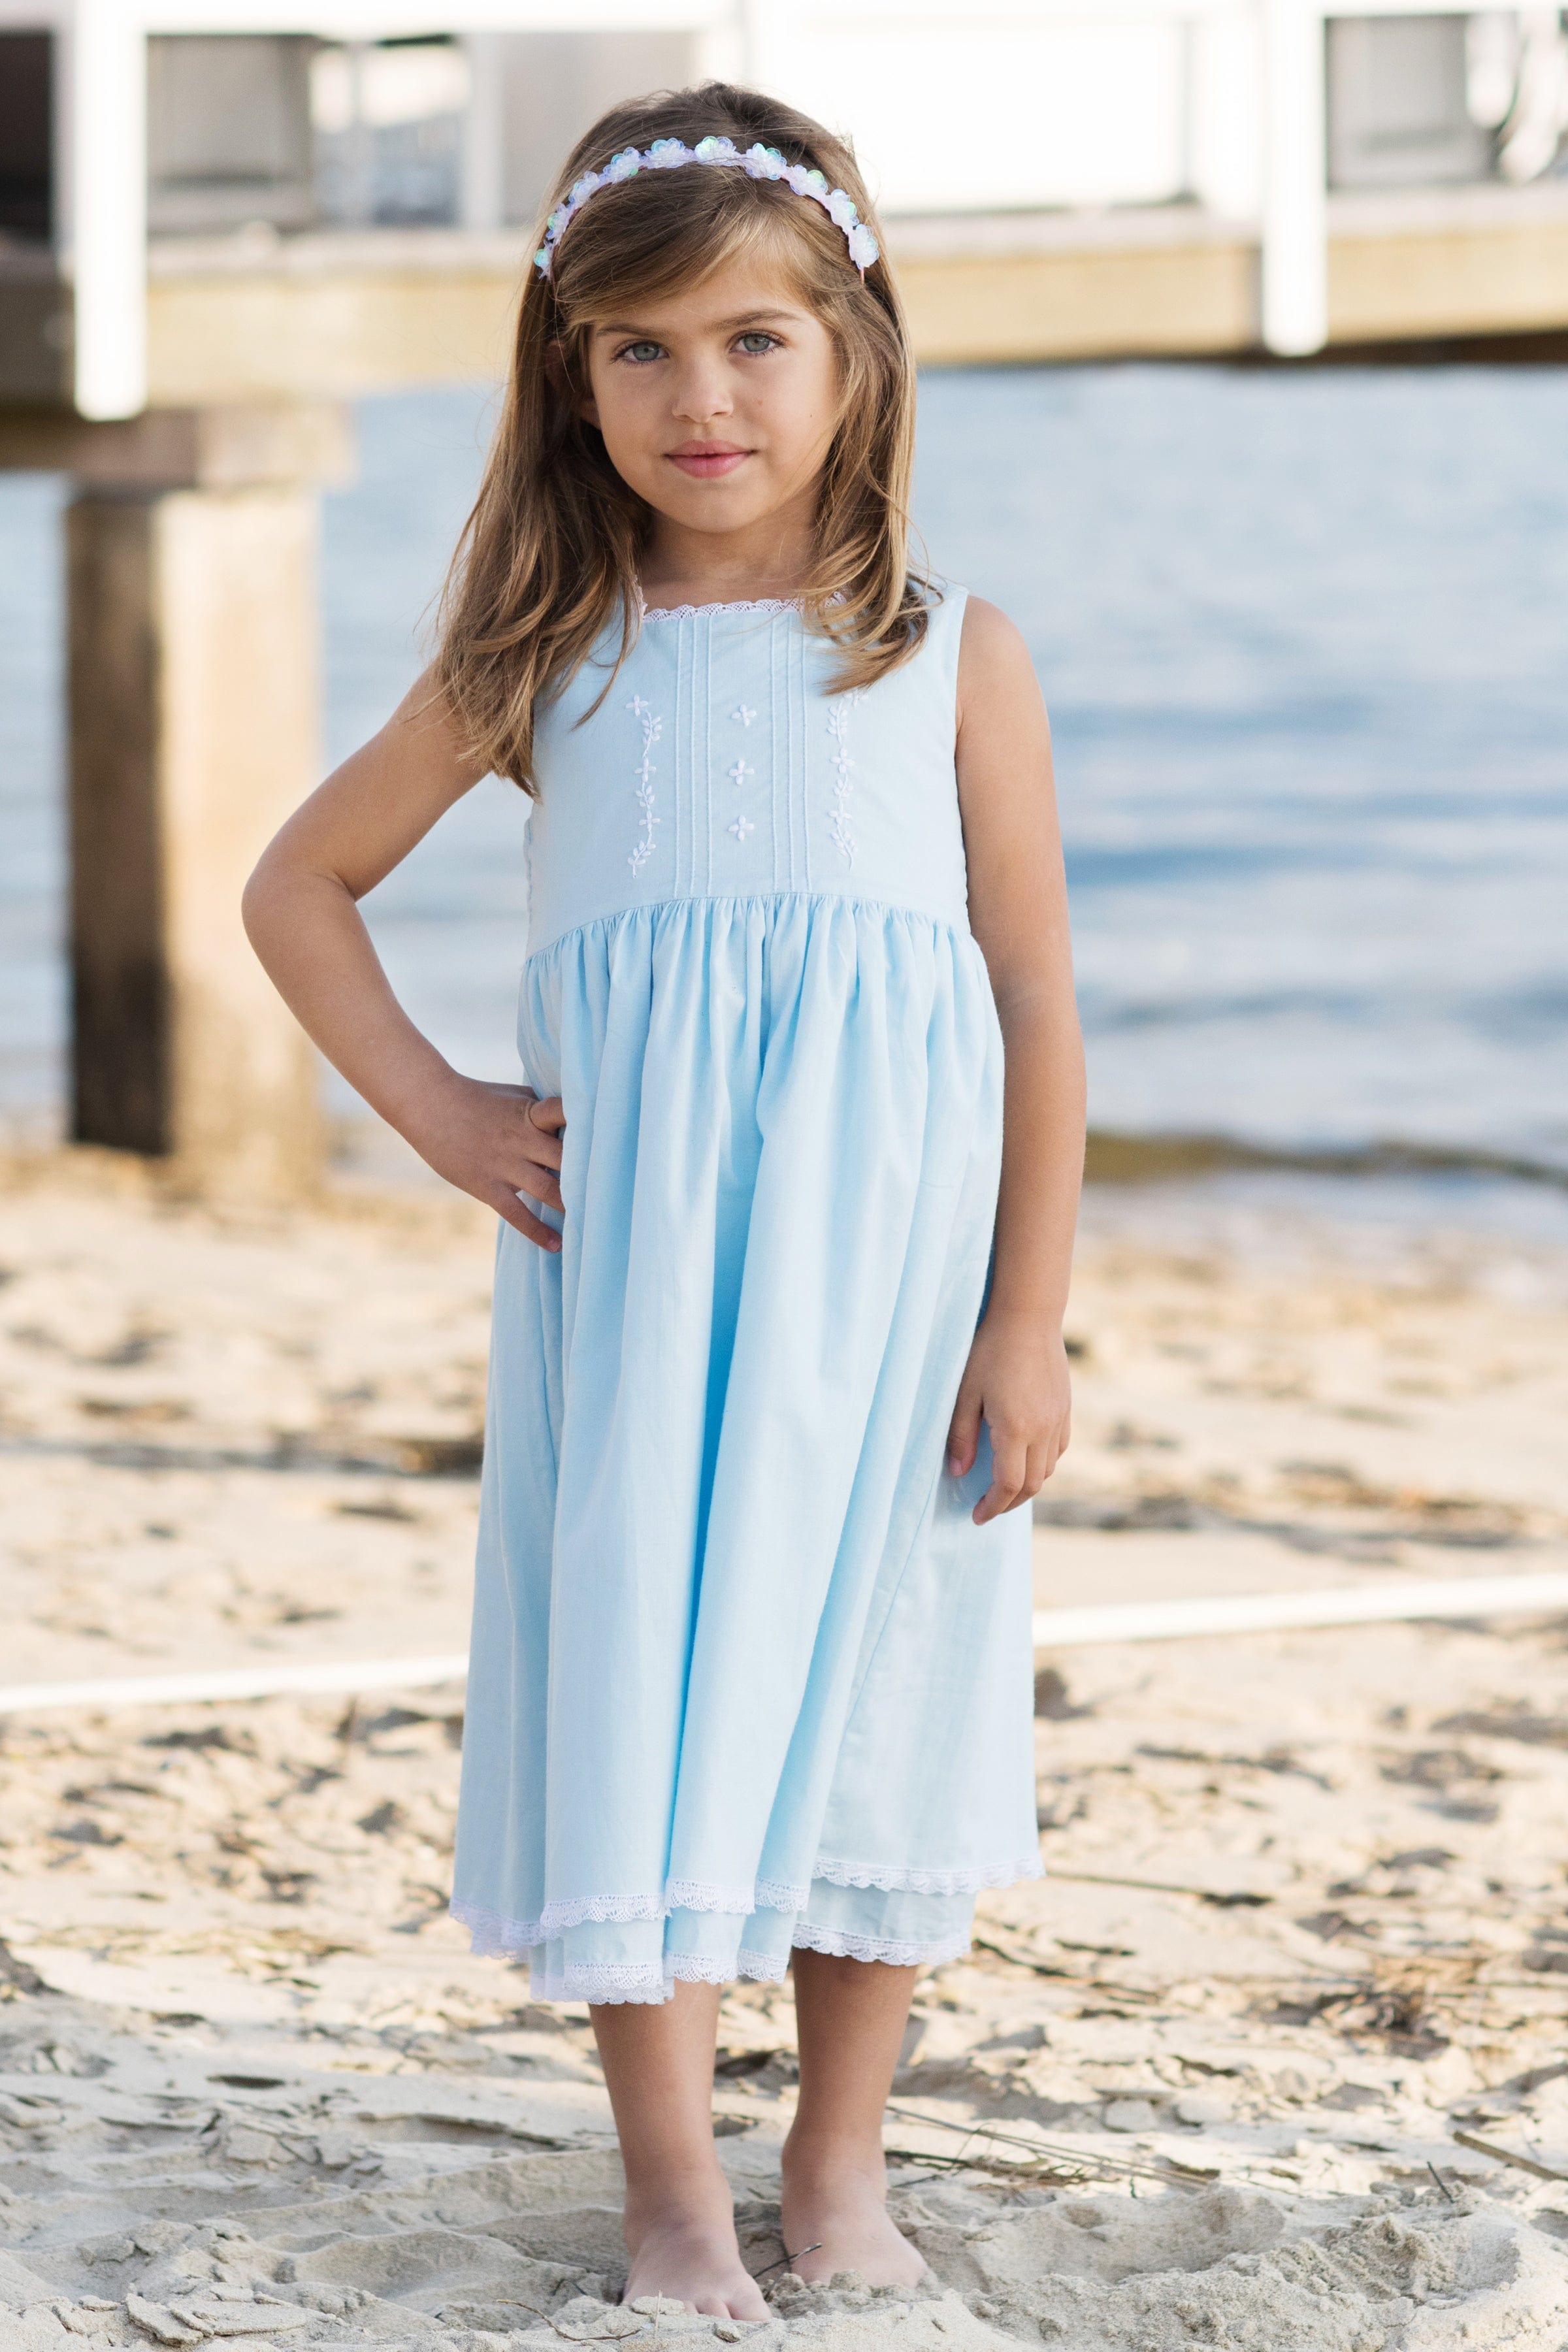 cape cod strasburg children summer dress for girls ocean blue girls dress pink white dresses birthday dresses 29984444874834